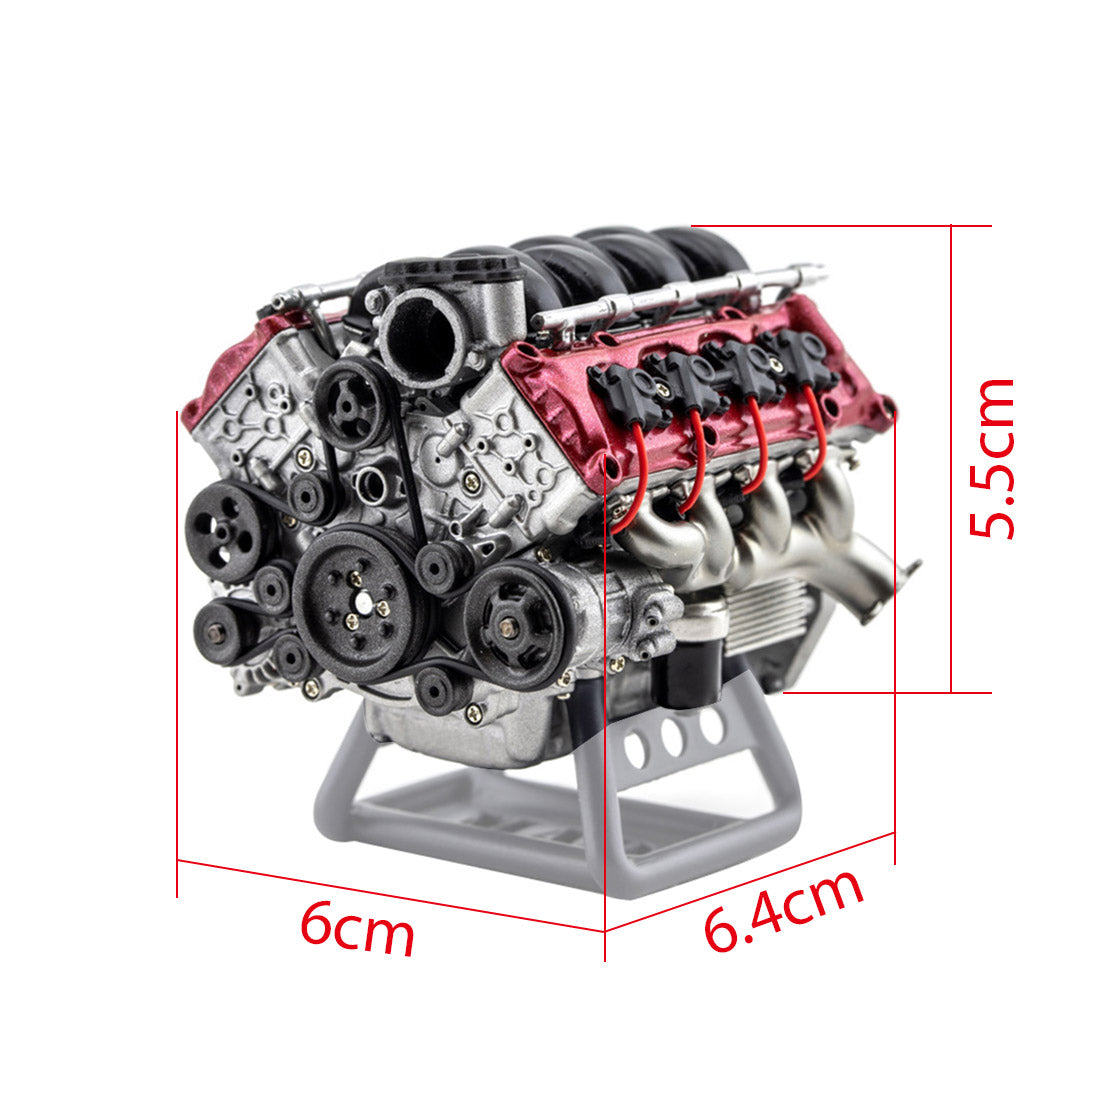 3D Printed Simulation Dynamic V8 Engine Internal Combustion Engine Model